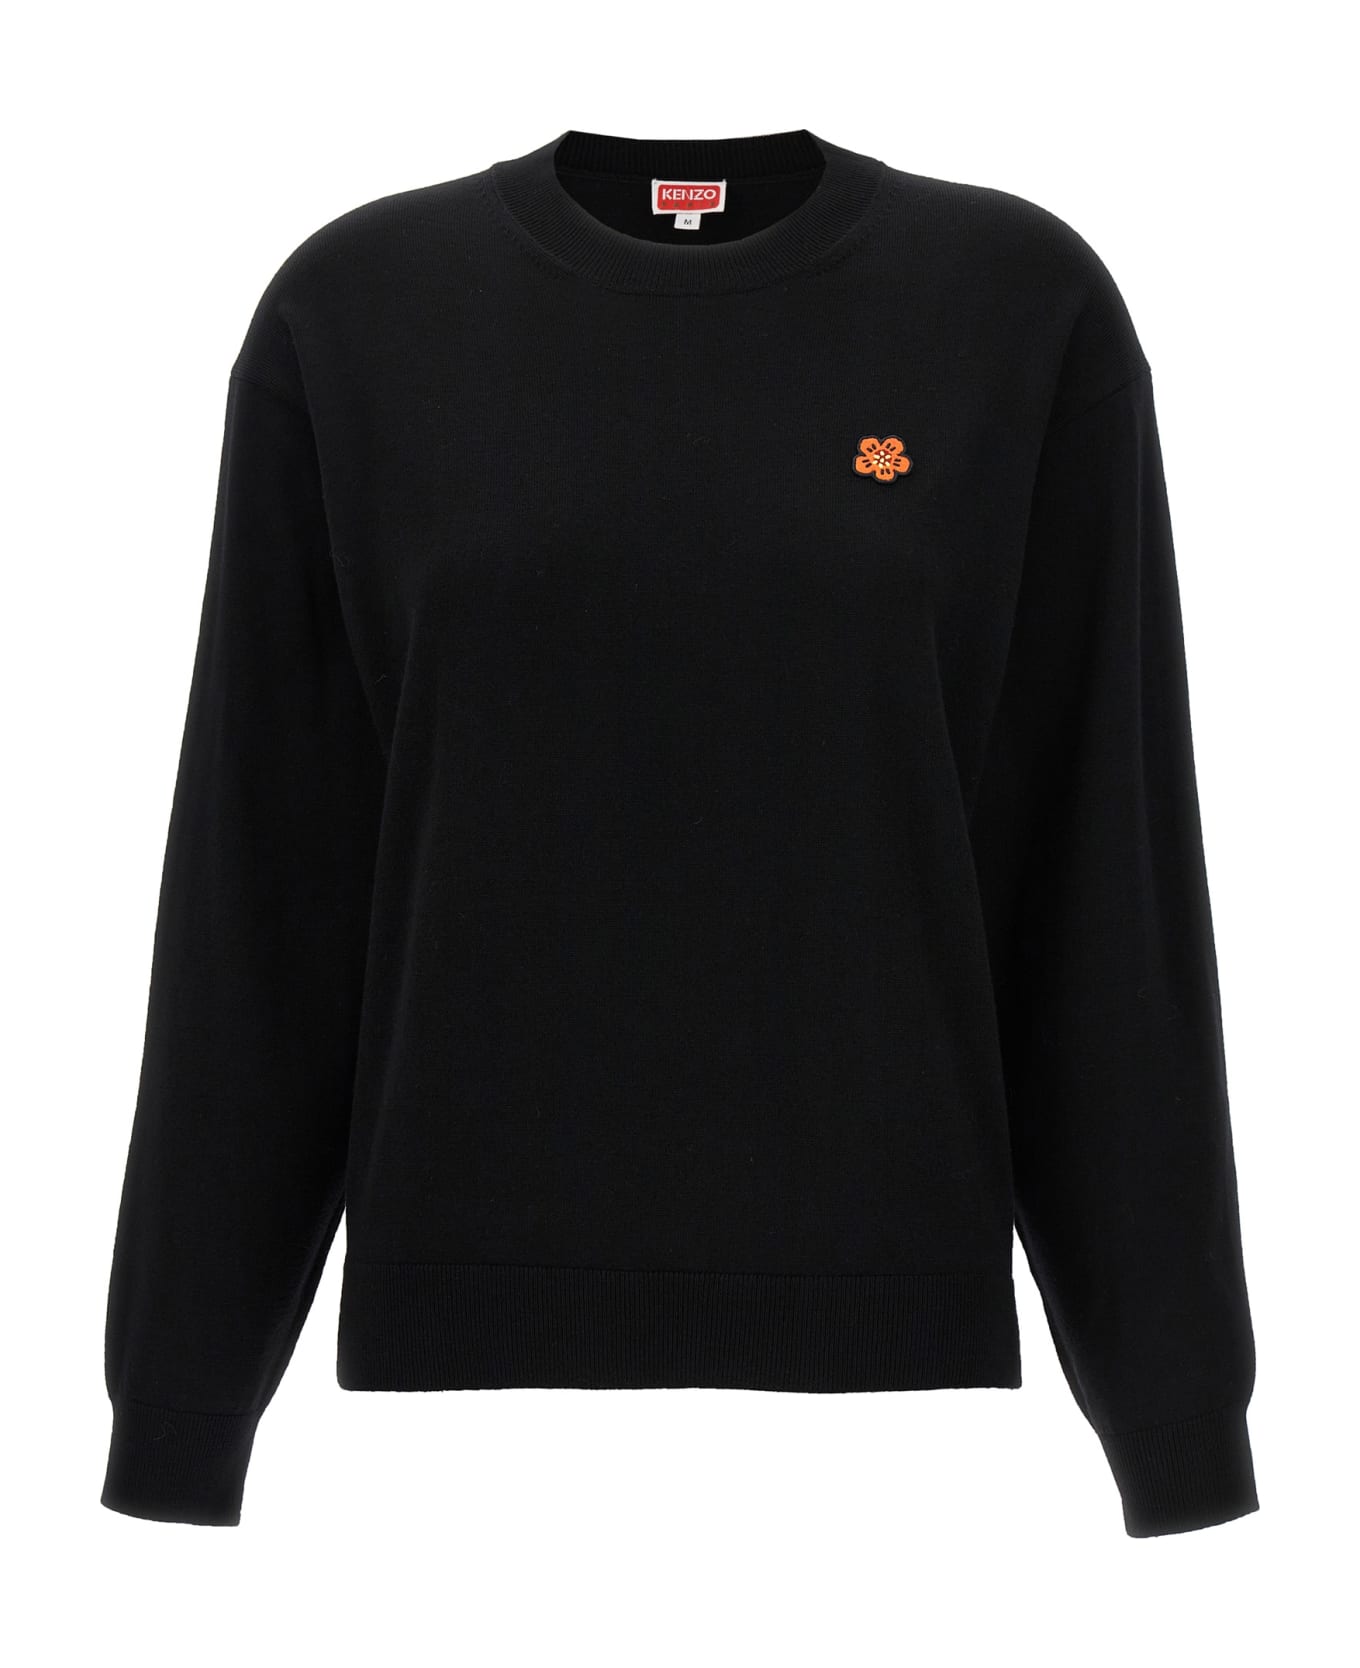 Kenzo 'boke Crest' Sweater - Black   ニットウェア